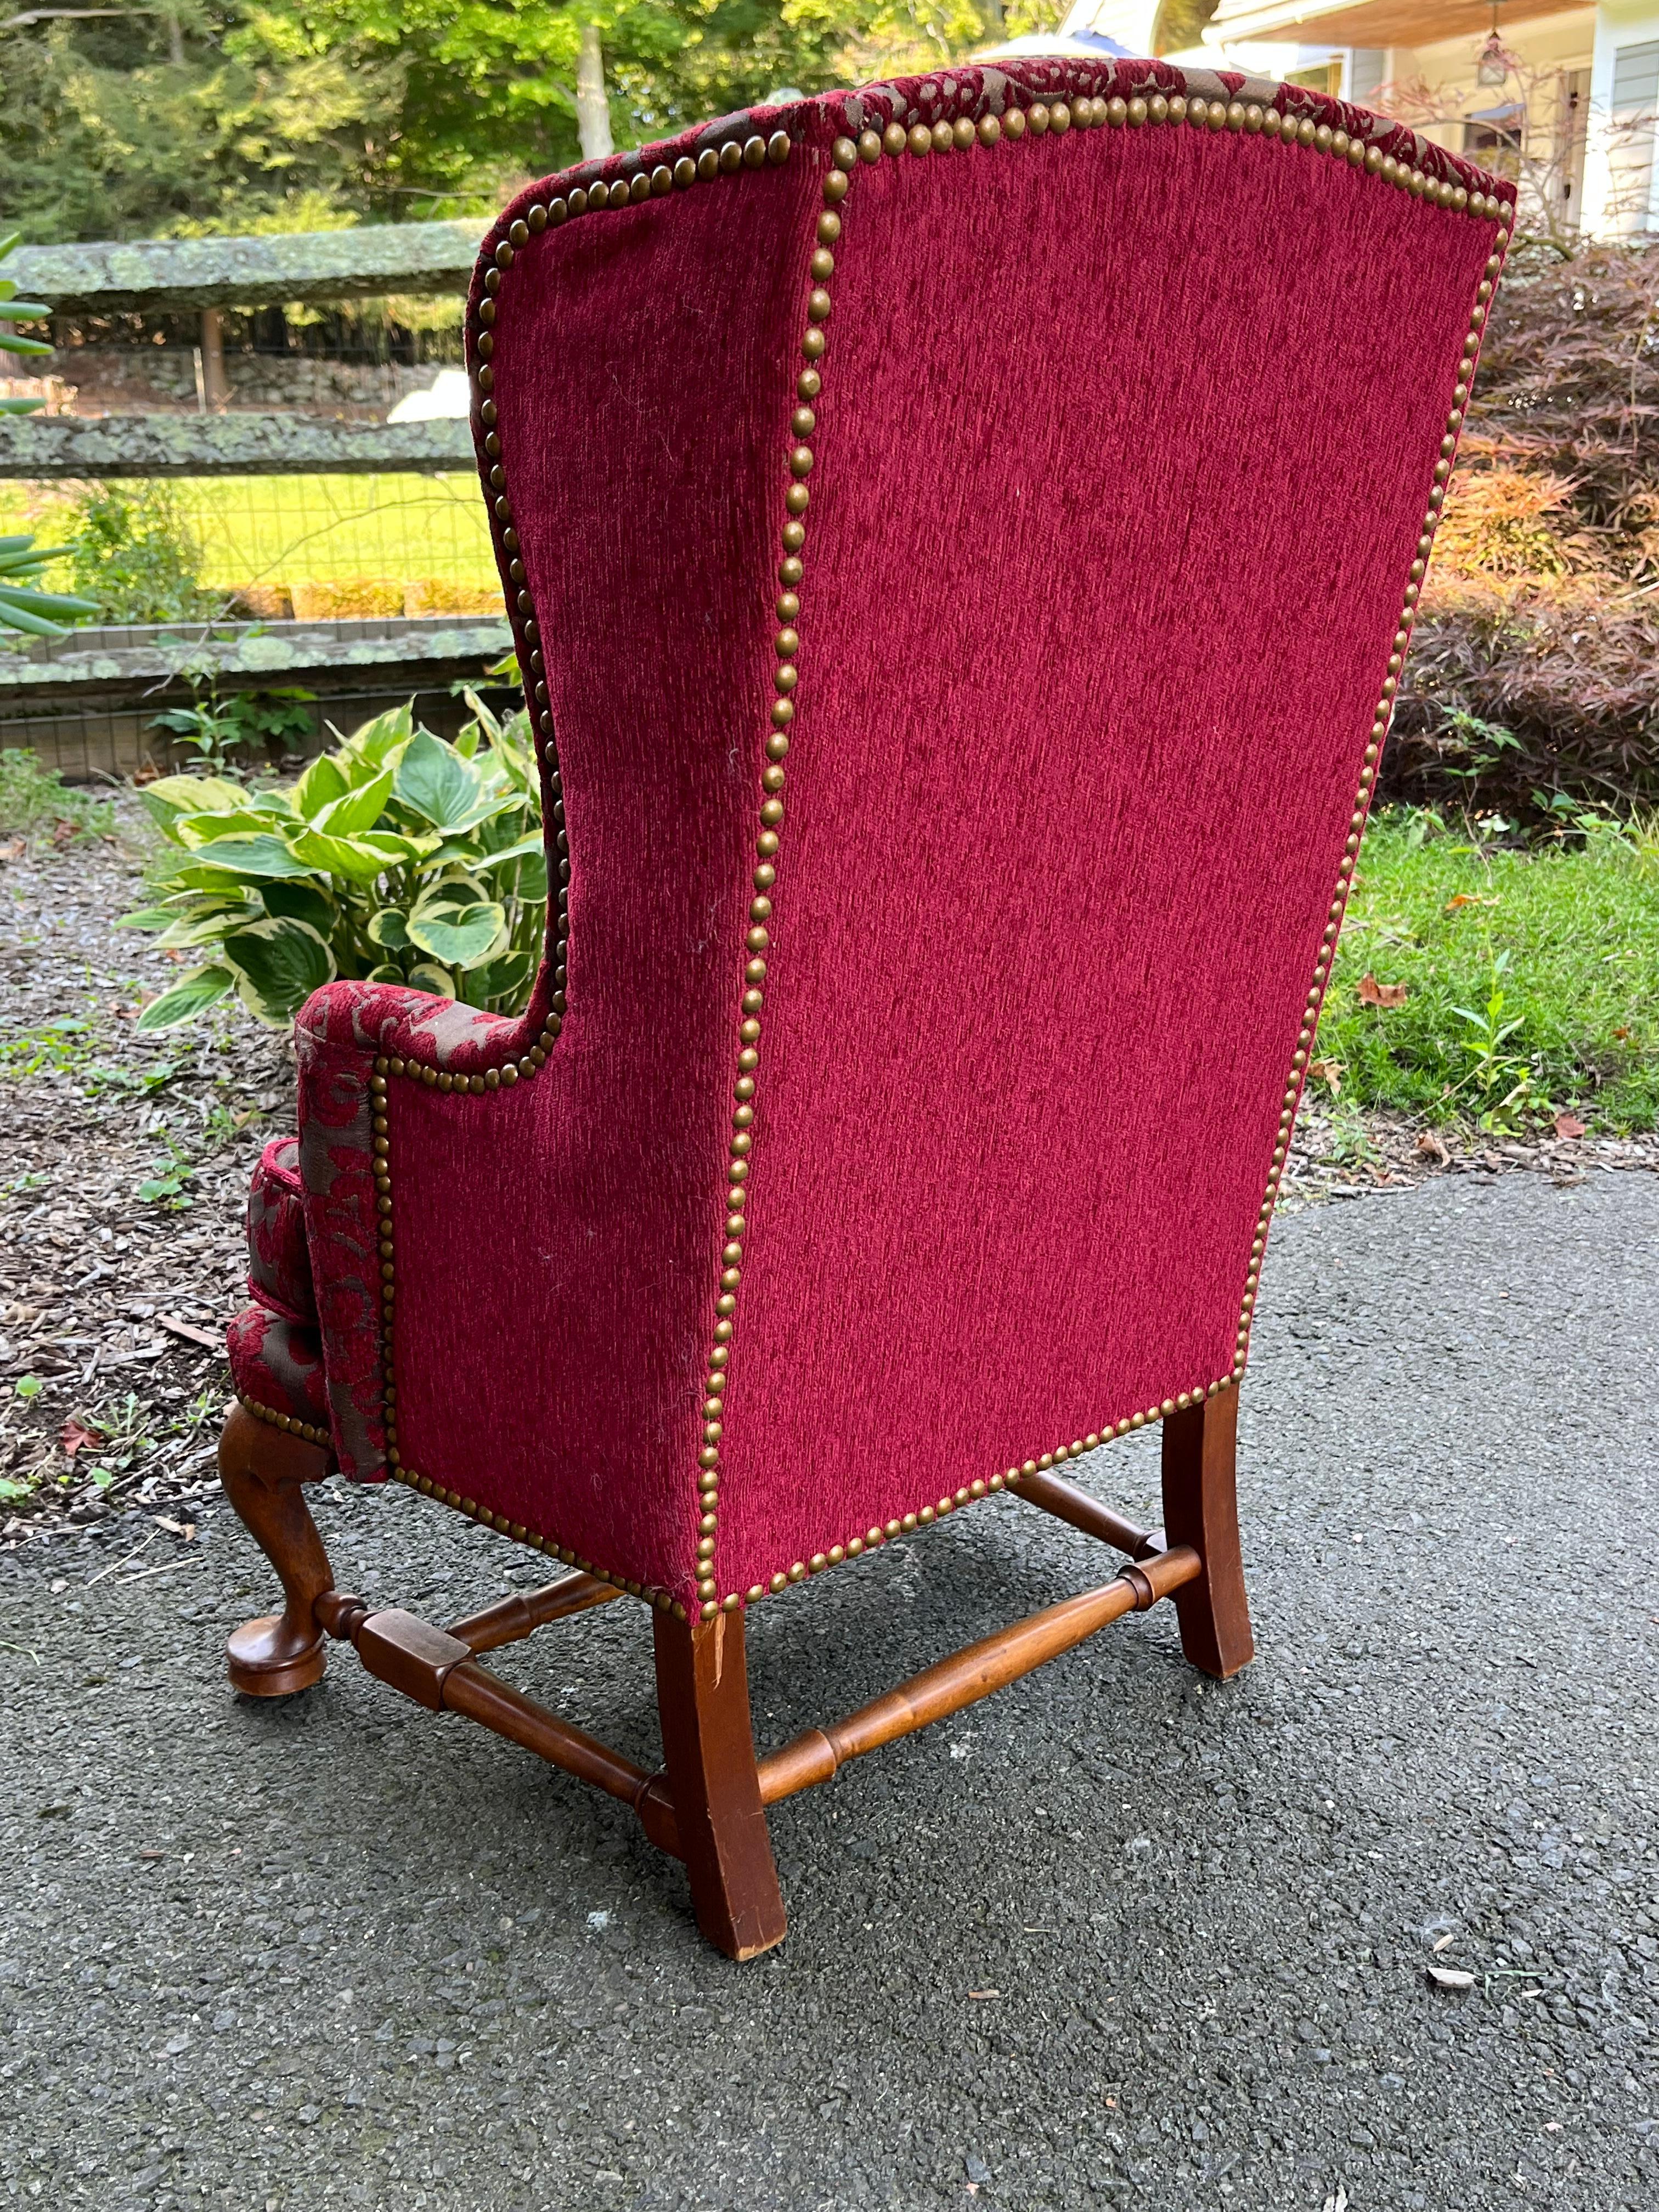 princess anne chair